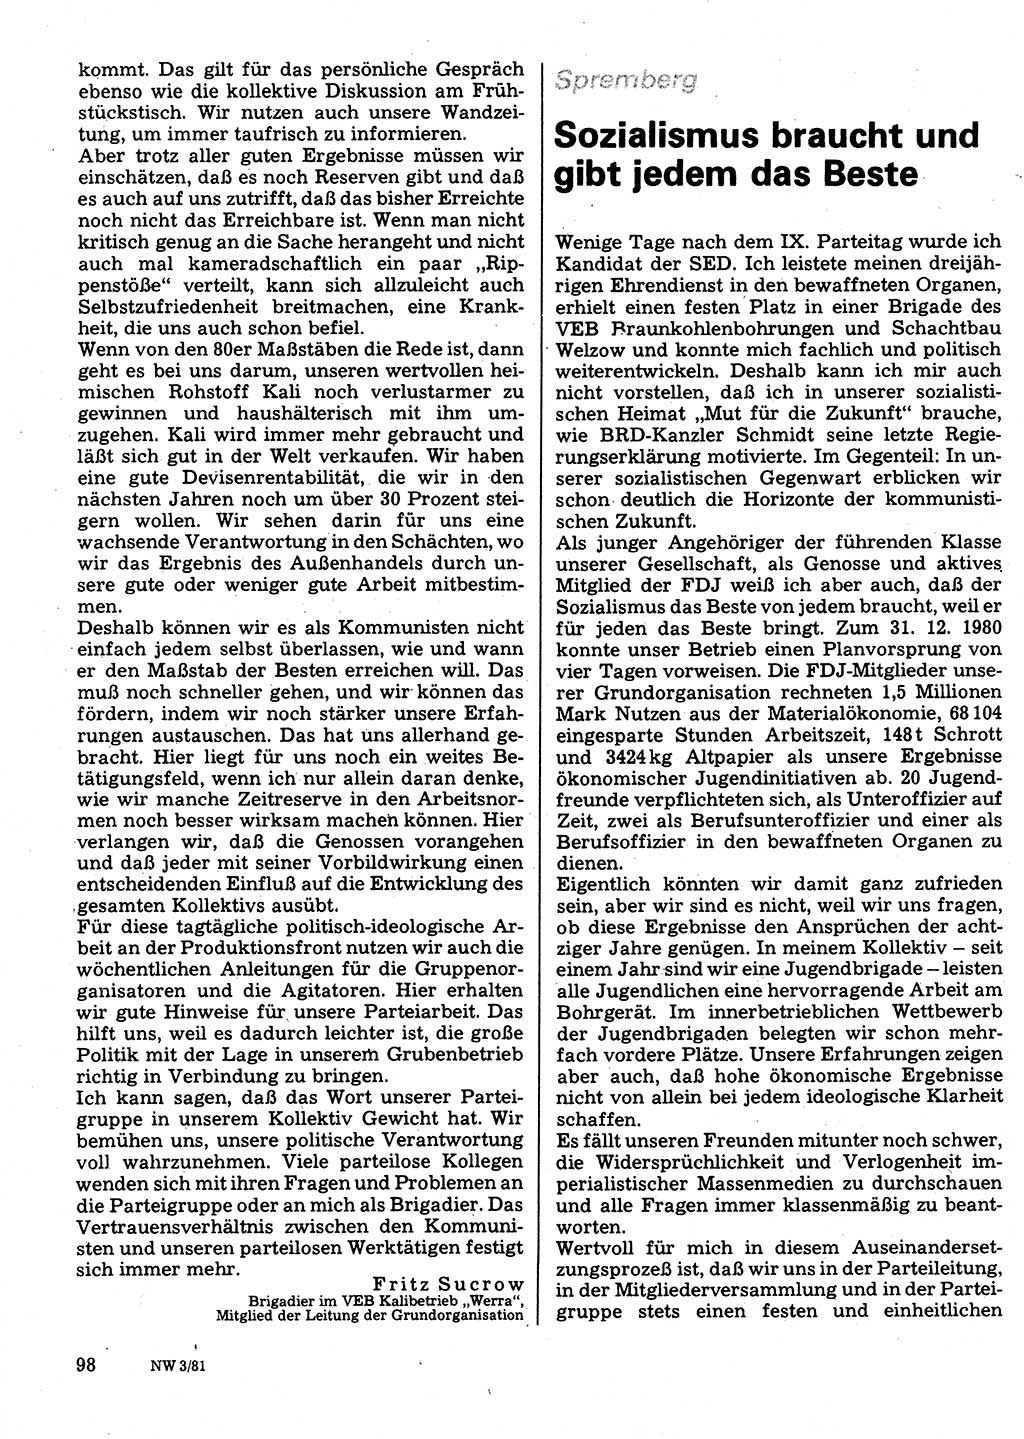 Neuer Weg (NW), Organ des Zentralkomitees (ZK) der SED (Sozialistische Einheitspartei Deutschlands) für Fragen des Parteilebens, 36. Jahrgang [Deutsche Demokratische Republik (DDR)] 1981, Seite 98 (NW ZK SED DDR 1981, S. 98)